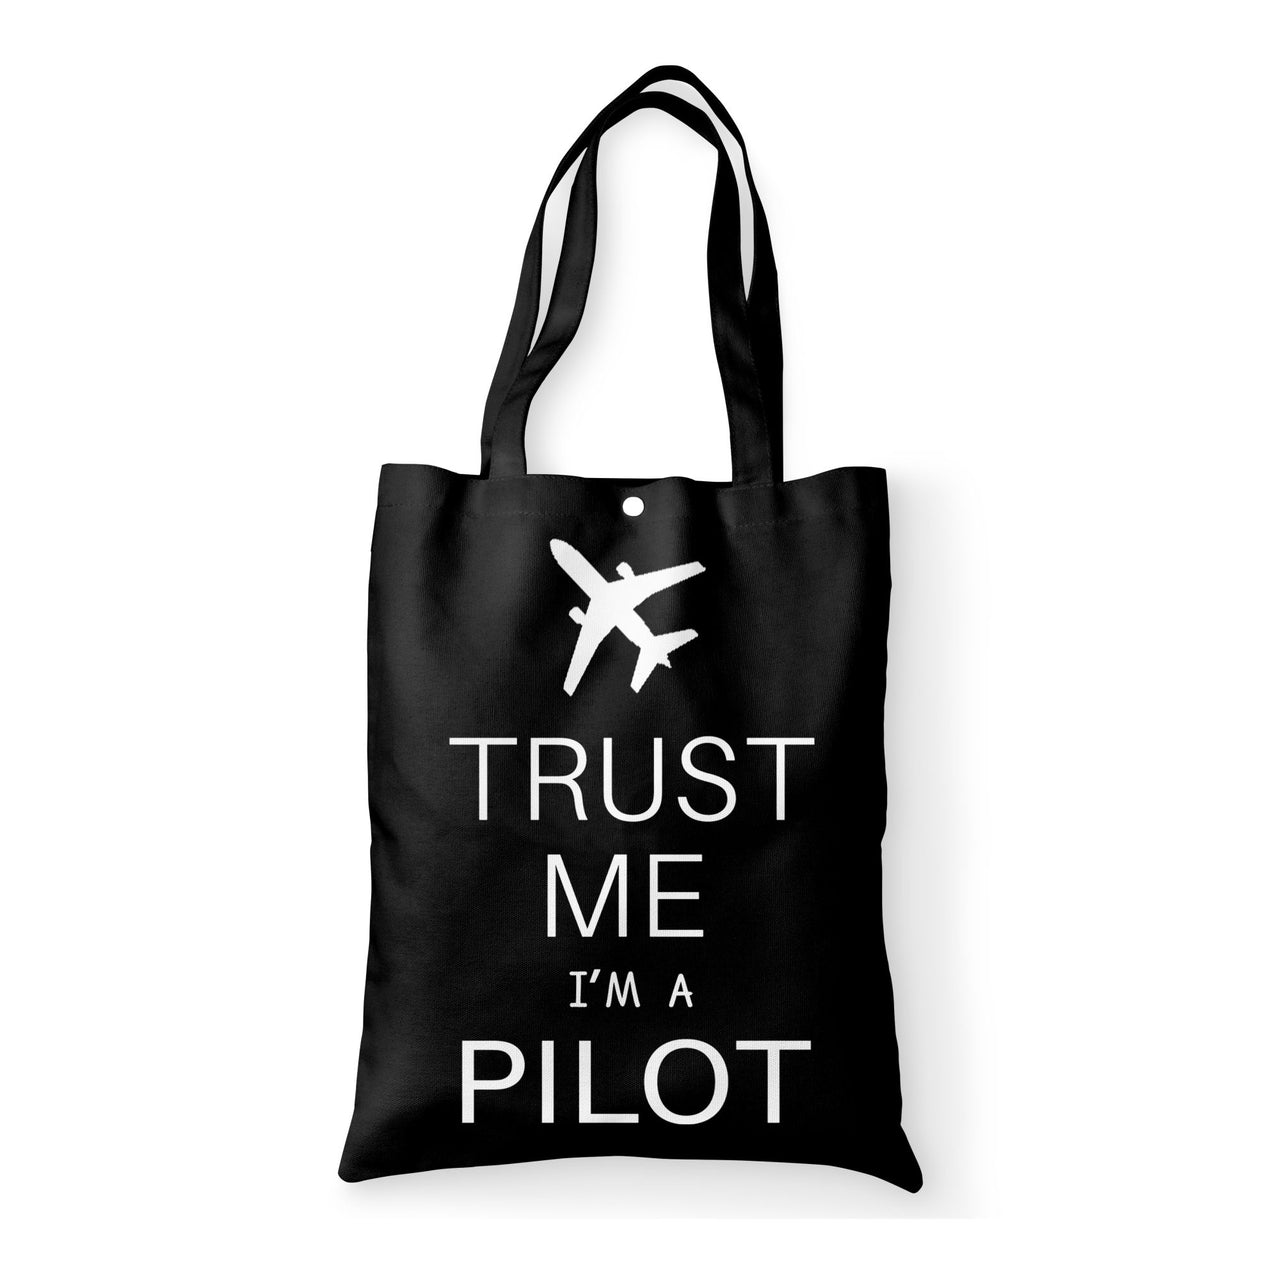 Trust Me I'm a Pilot 2 Designed Tote Bags